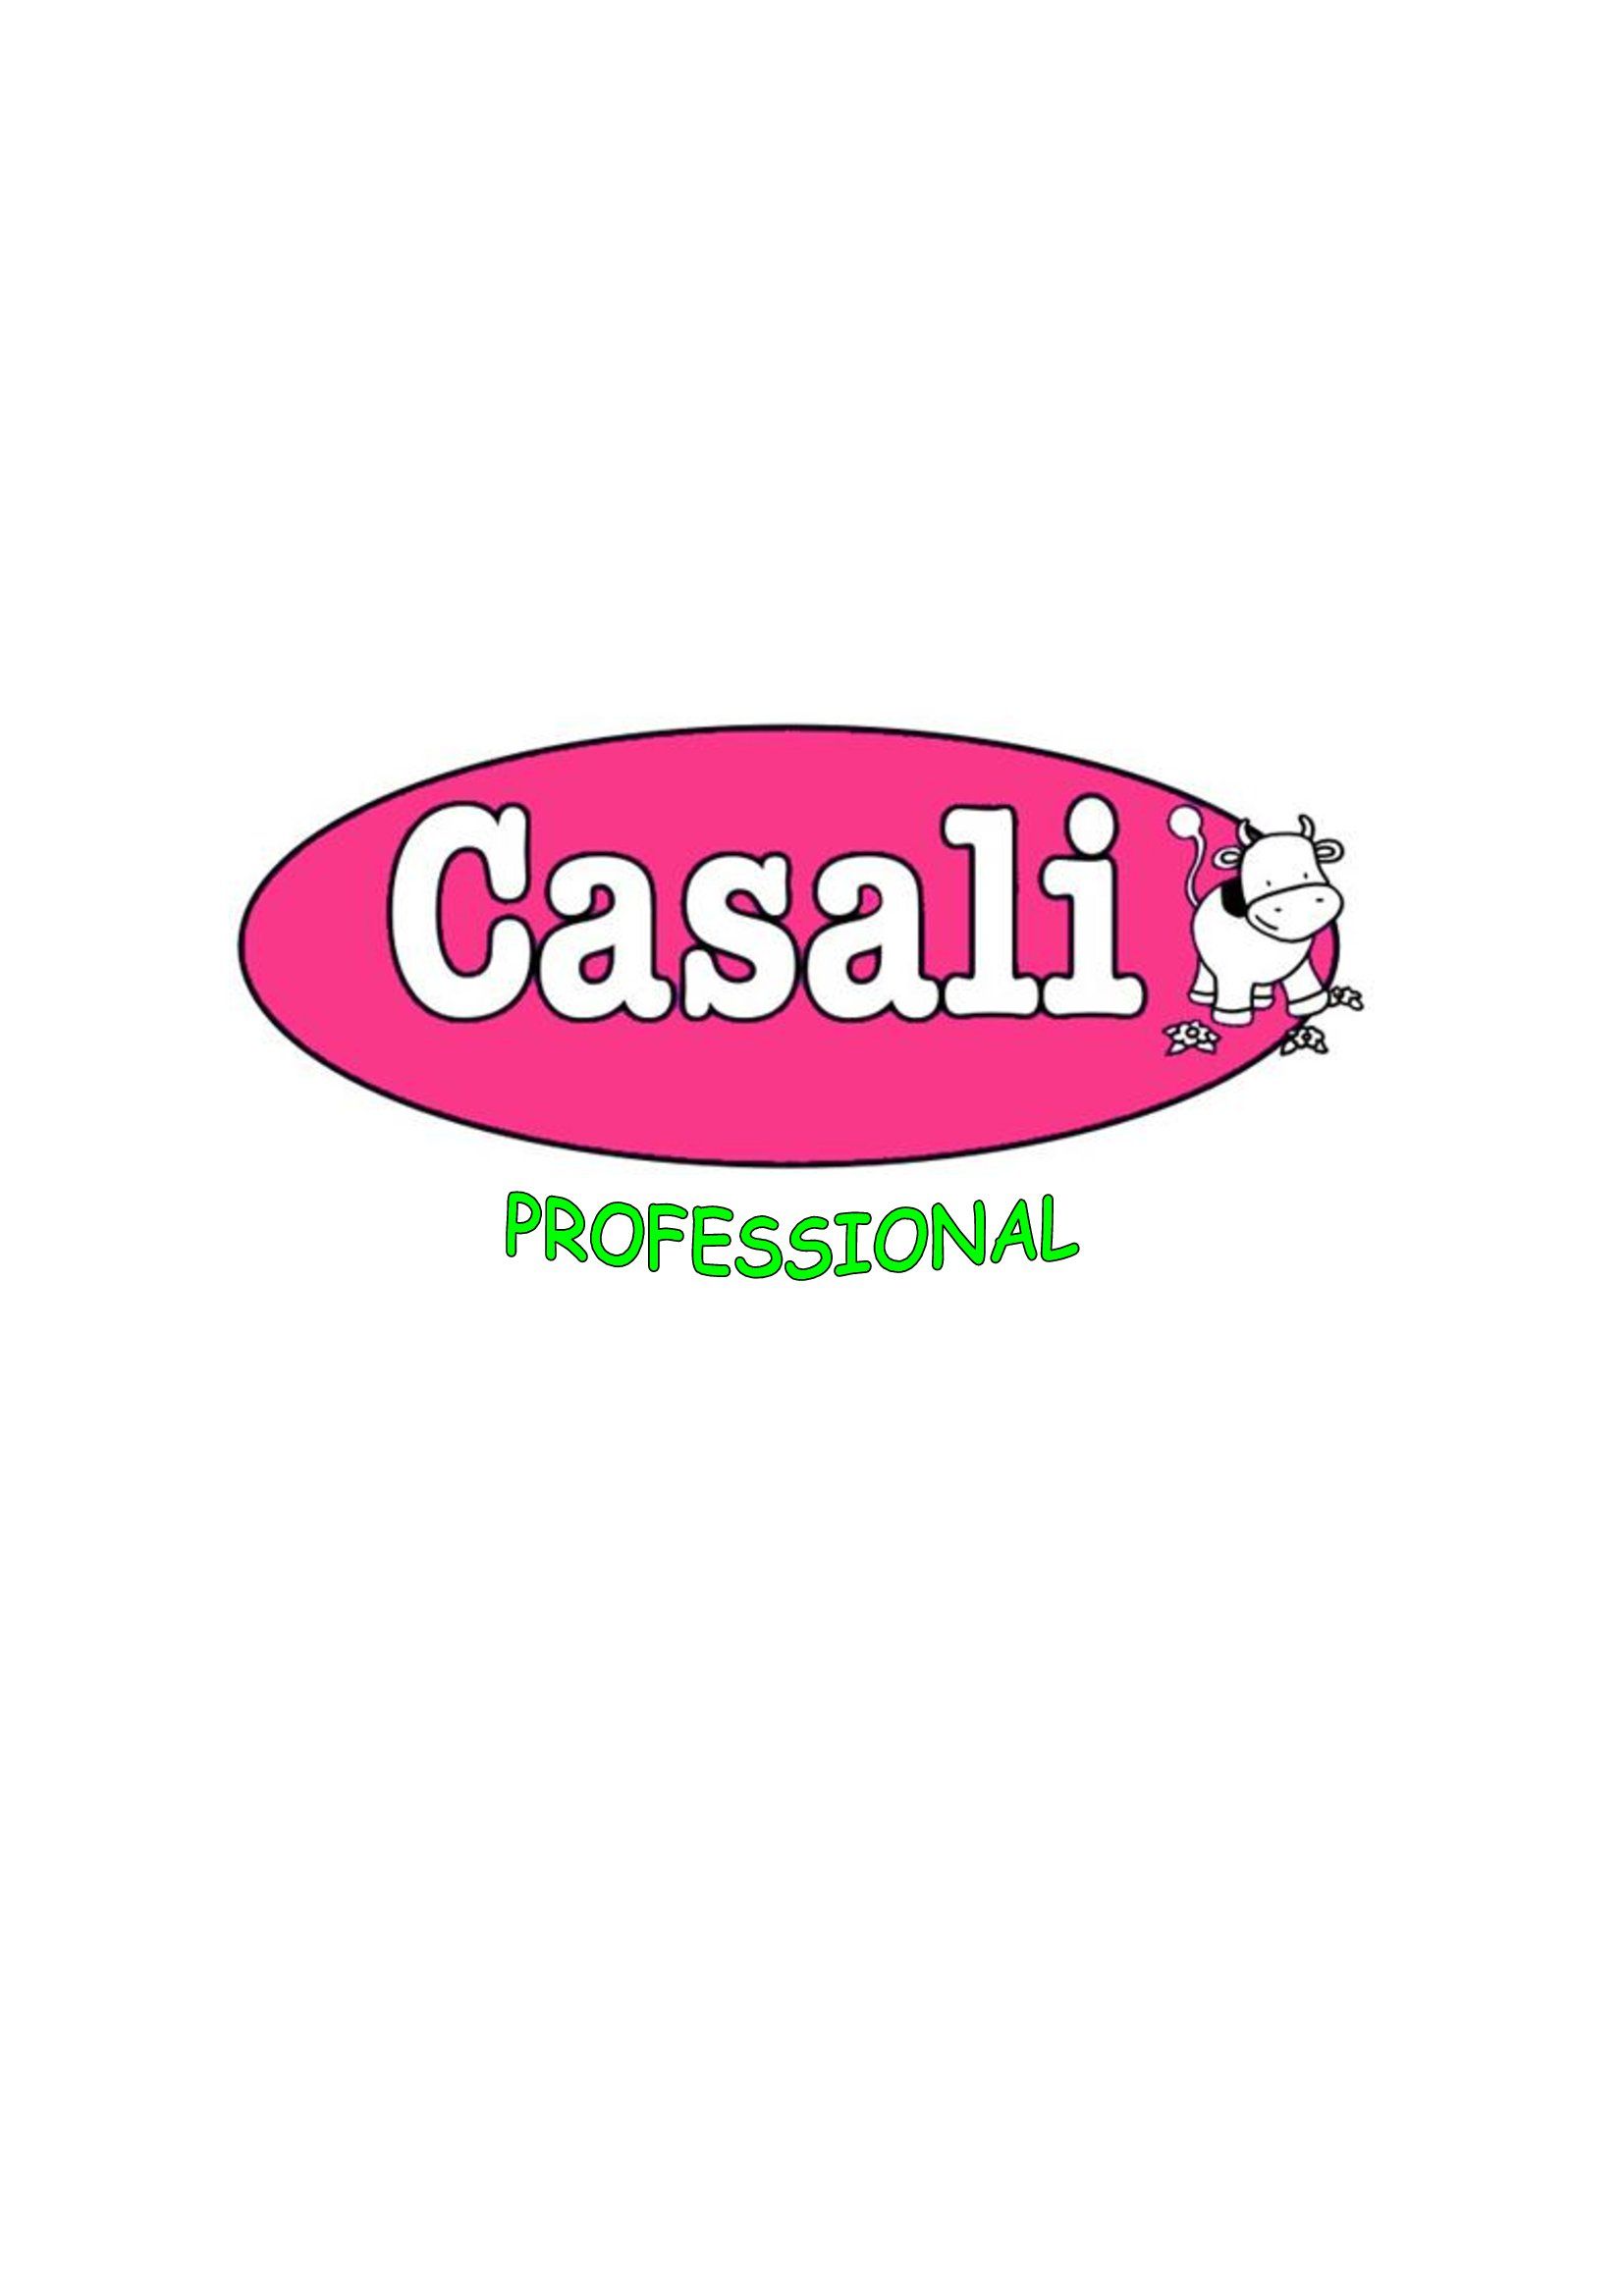 Casali-logo